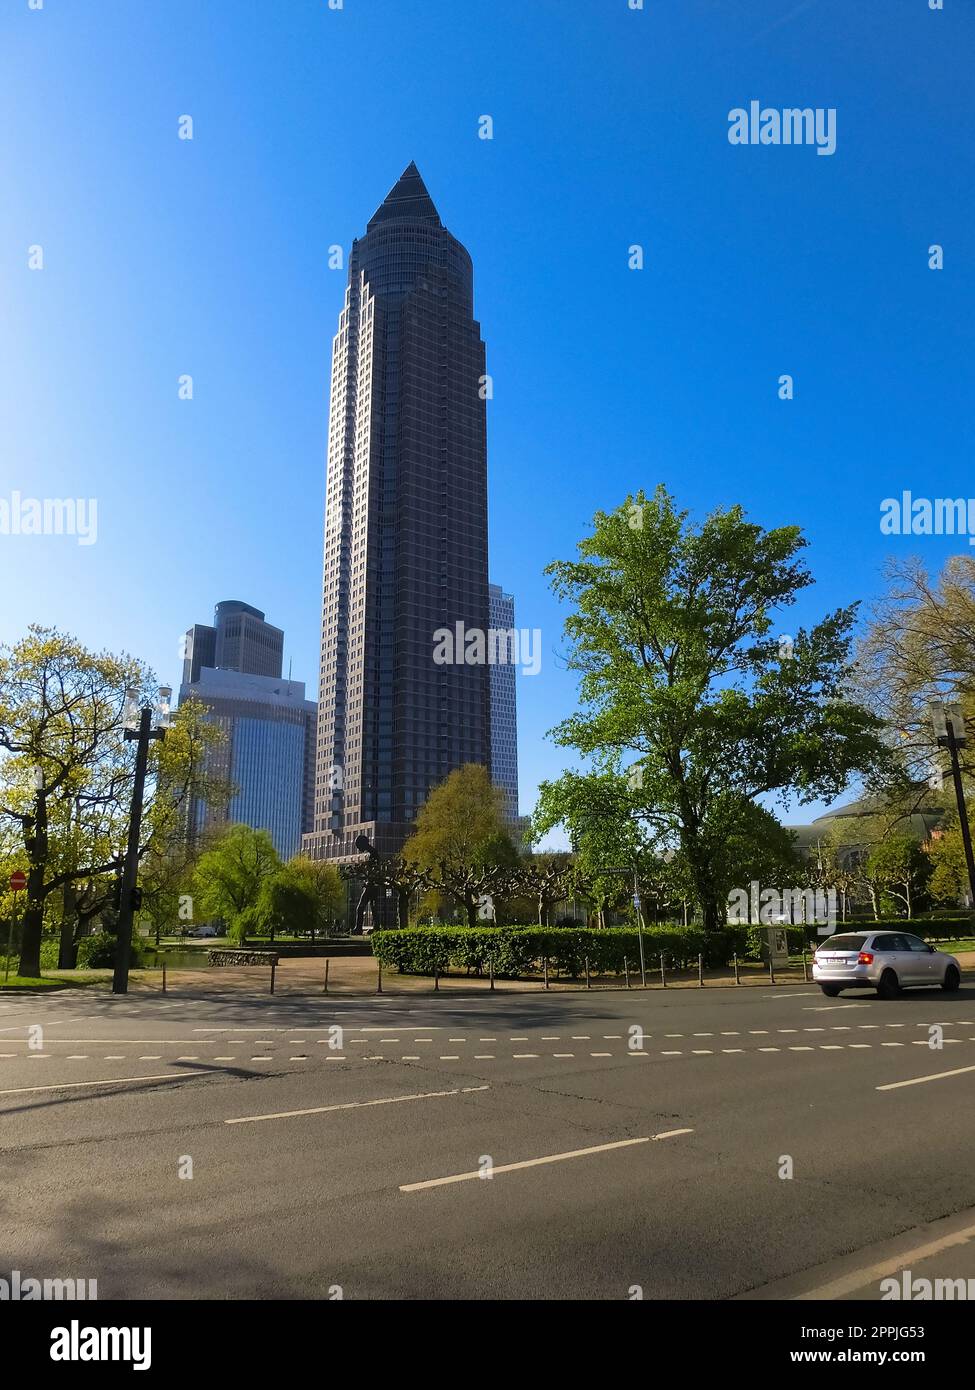 Messeturm, oder Messeturm, ein Wolkenkratzer in Frankfurt am Main Stockfoto